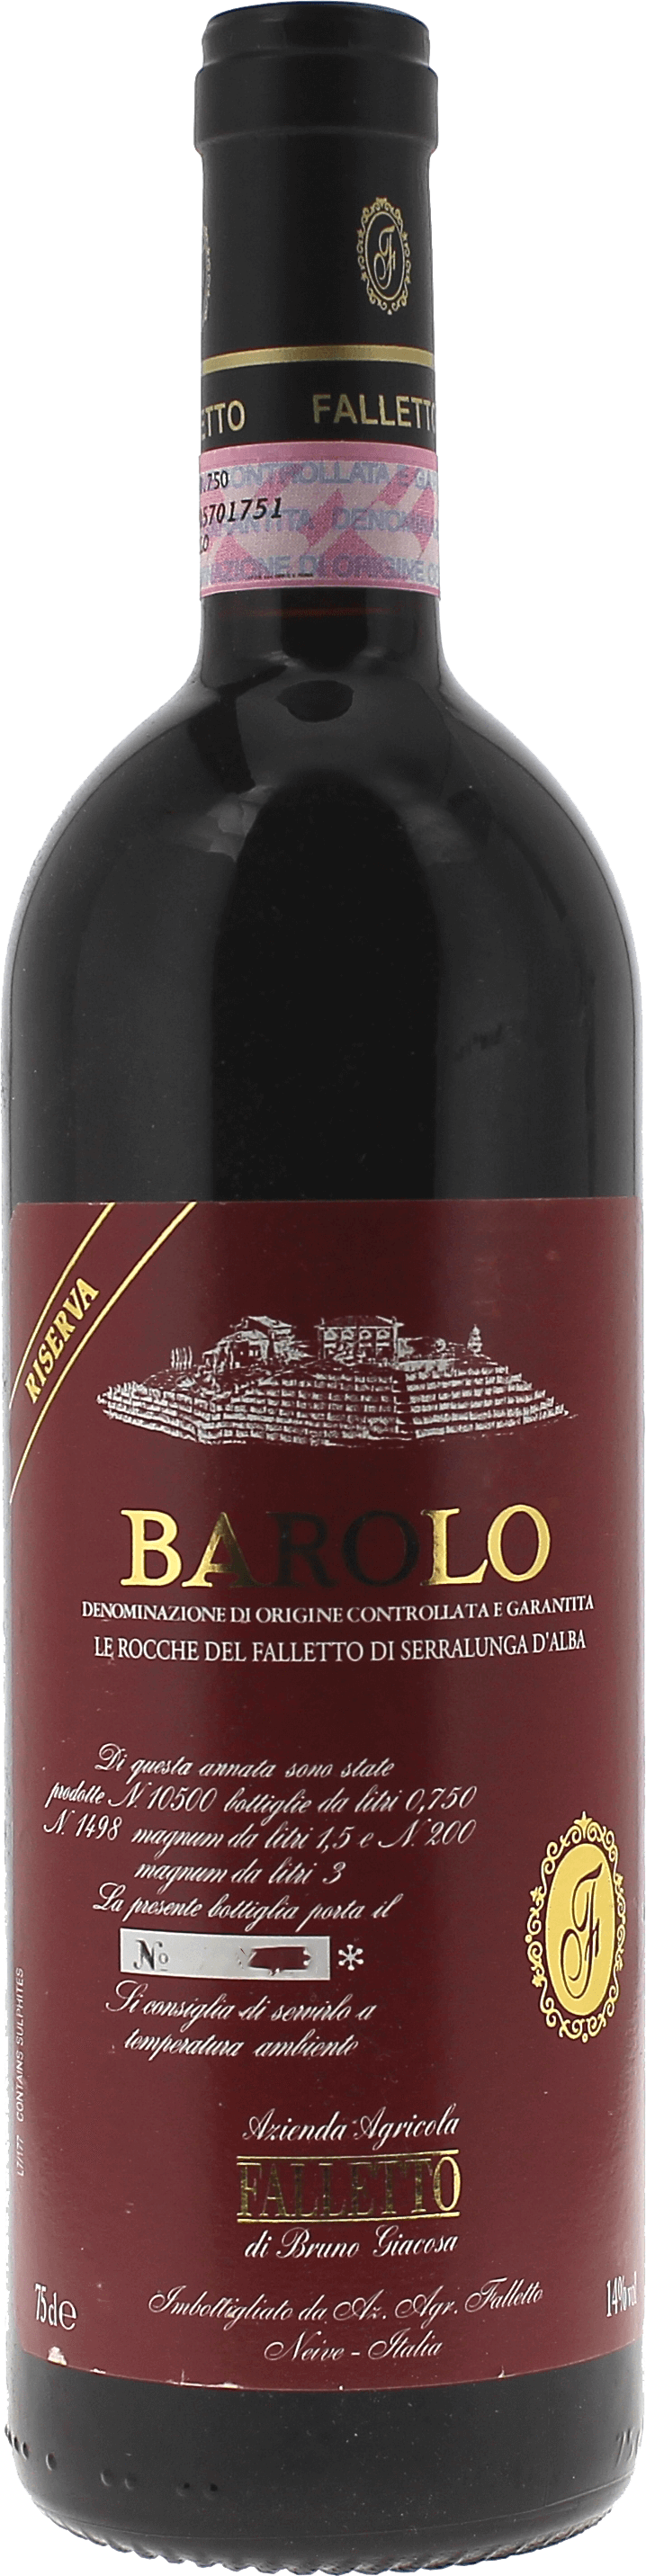 Barolo le rocche del falletto riserva 2007  Italie, Vin italien